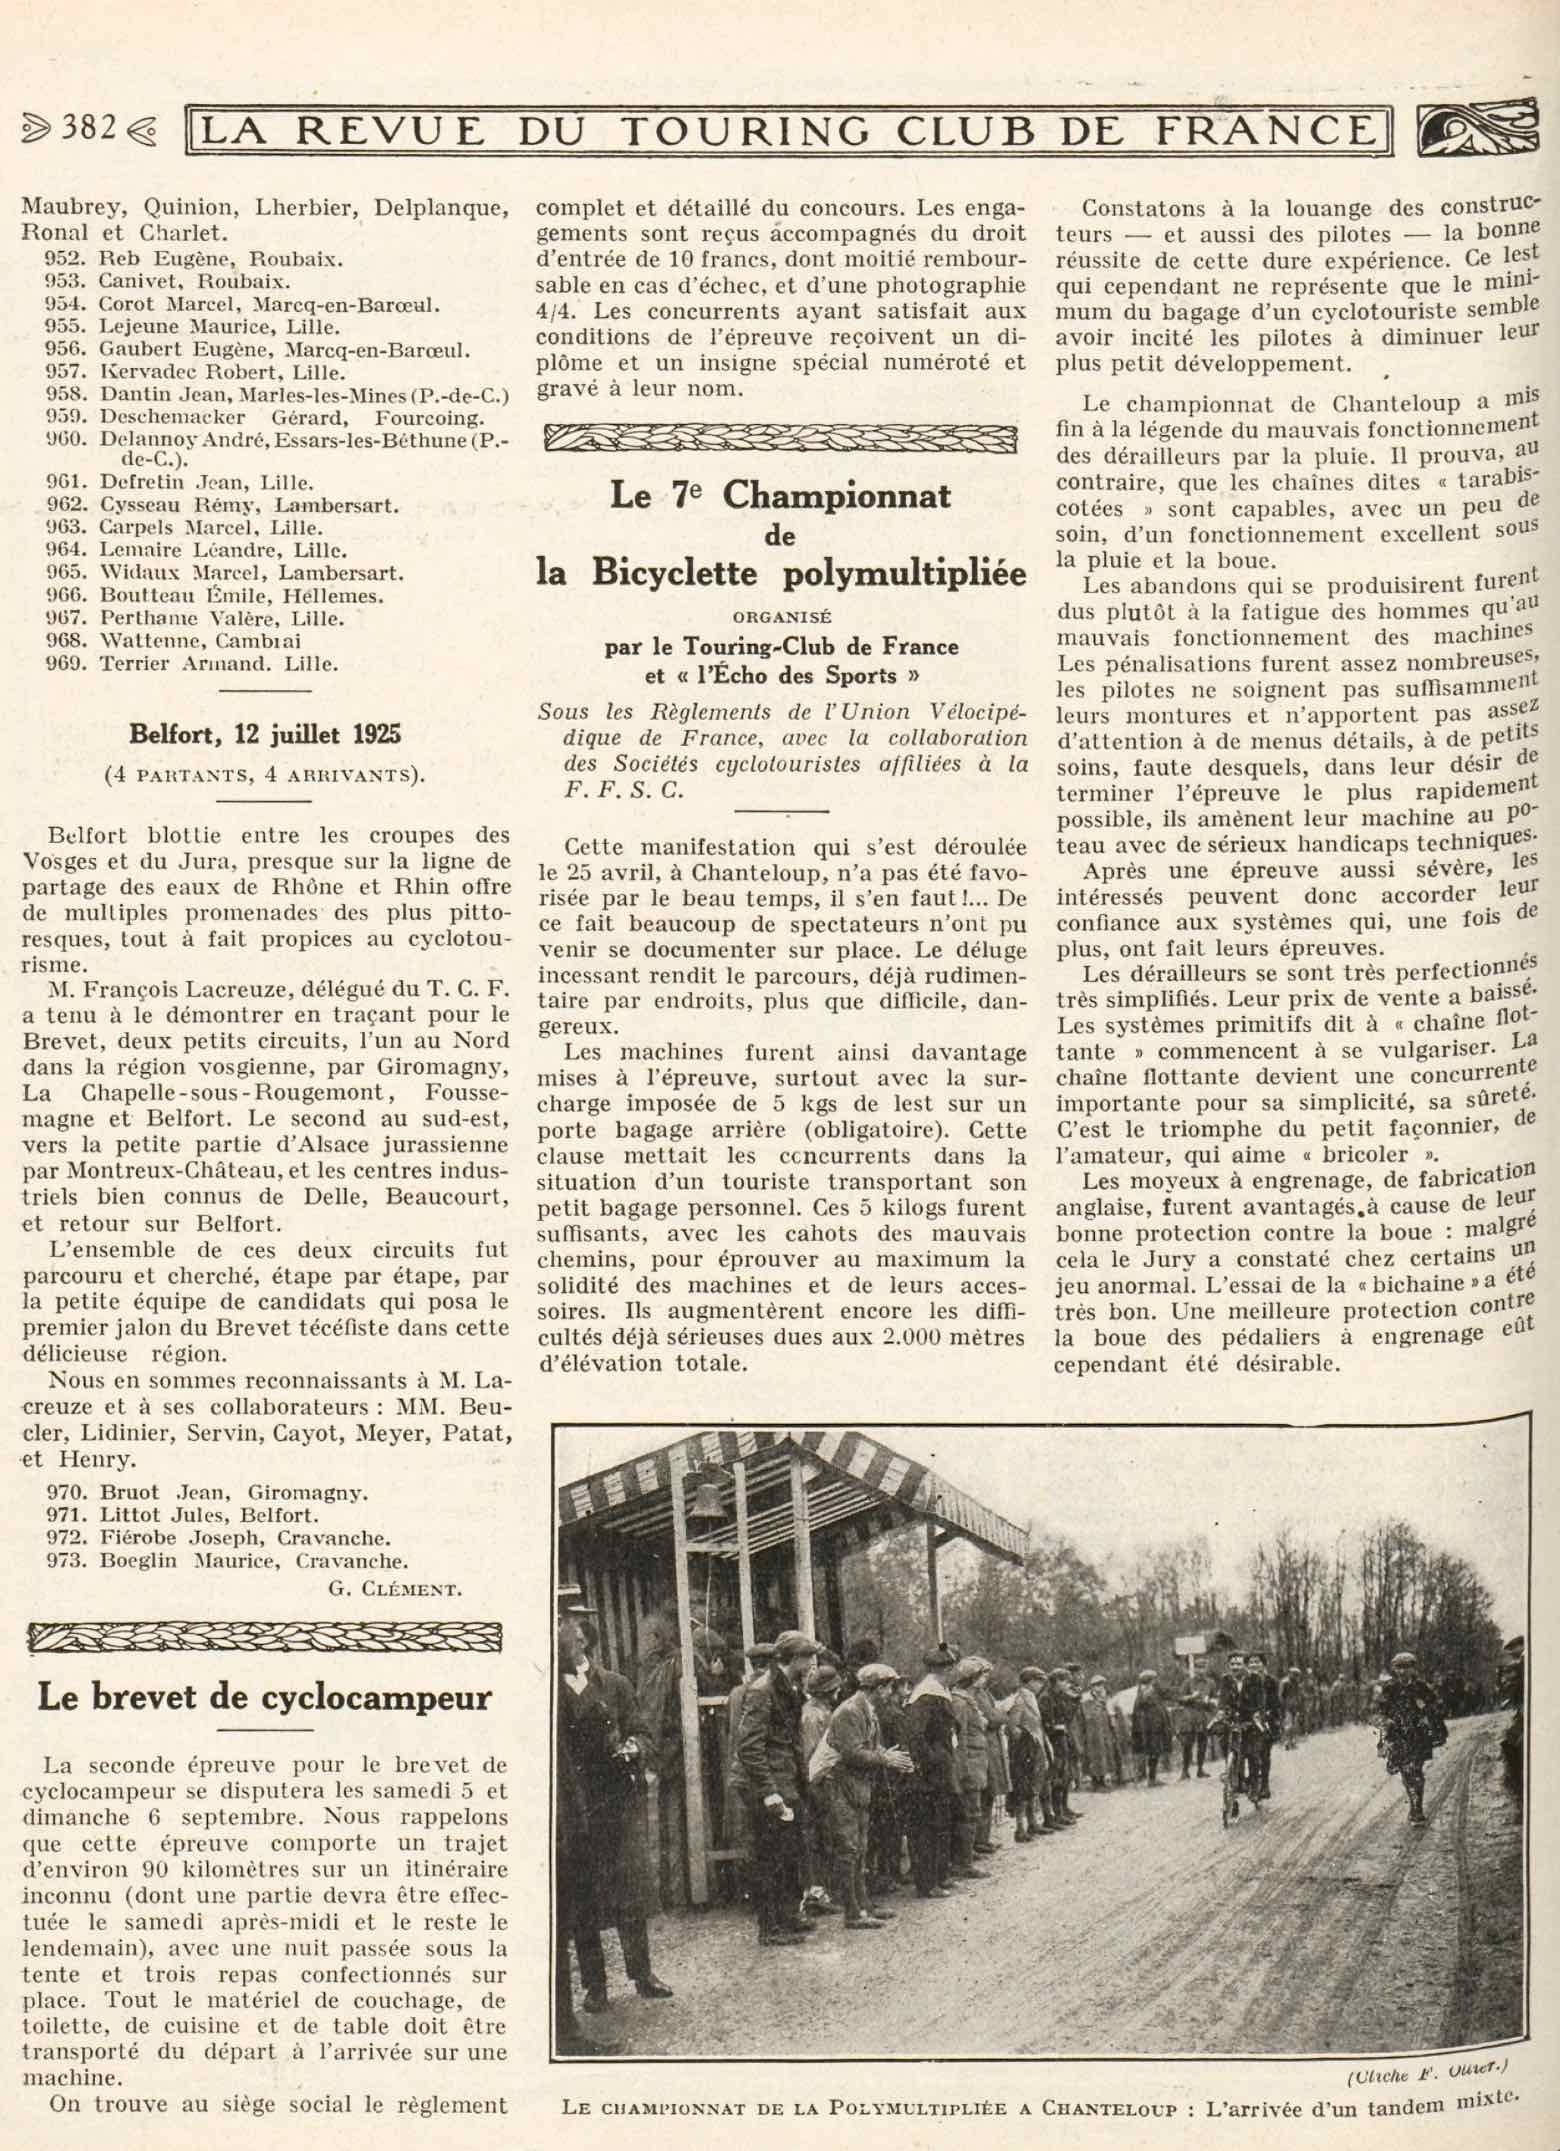 T.C.F. Revue Mensuelle September 1925 - Le 7e Championnat de la Bicyclette polymultipliee scan 1 main image